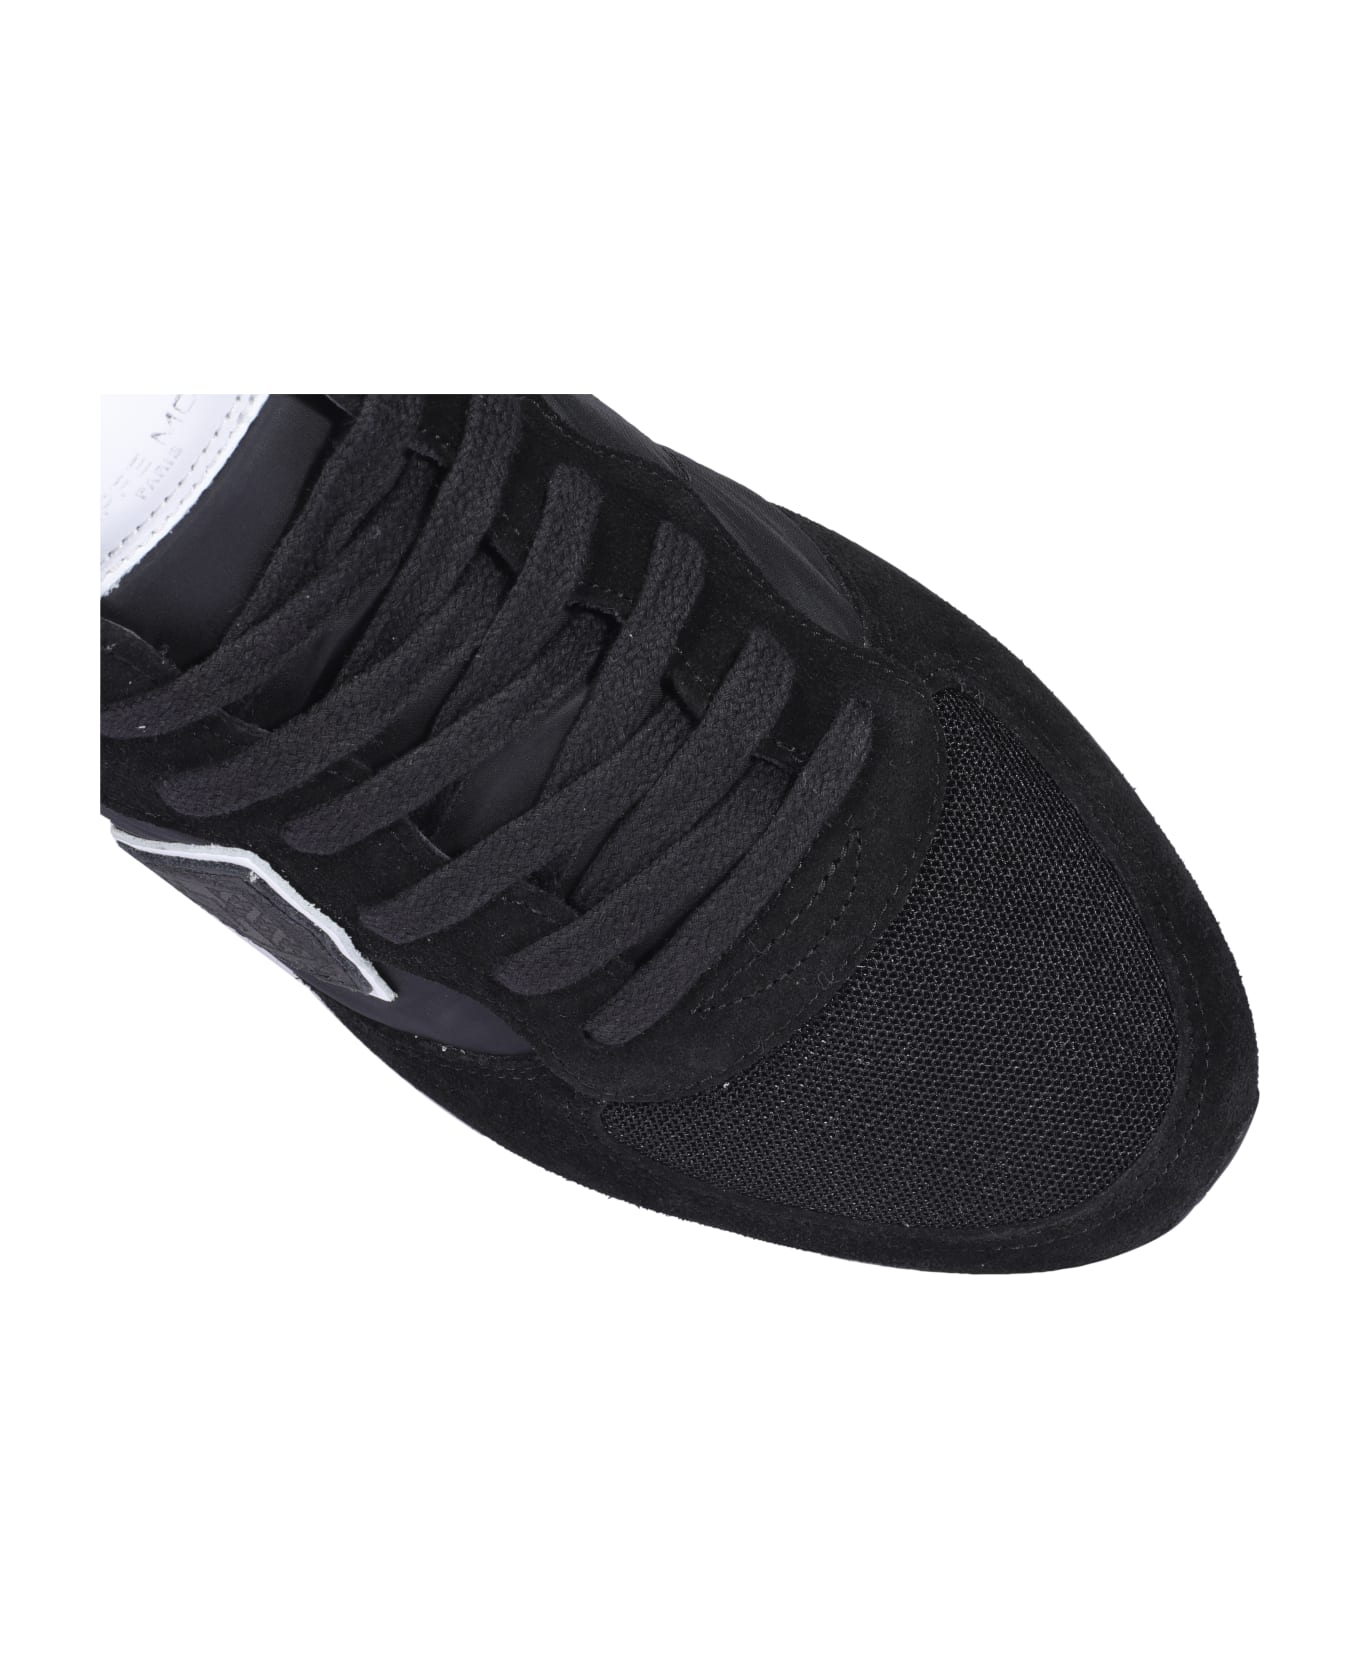 Philippe Model Trpx Veau Sneakers - Black スニーカー